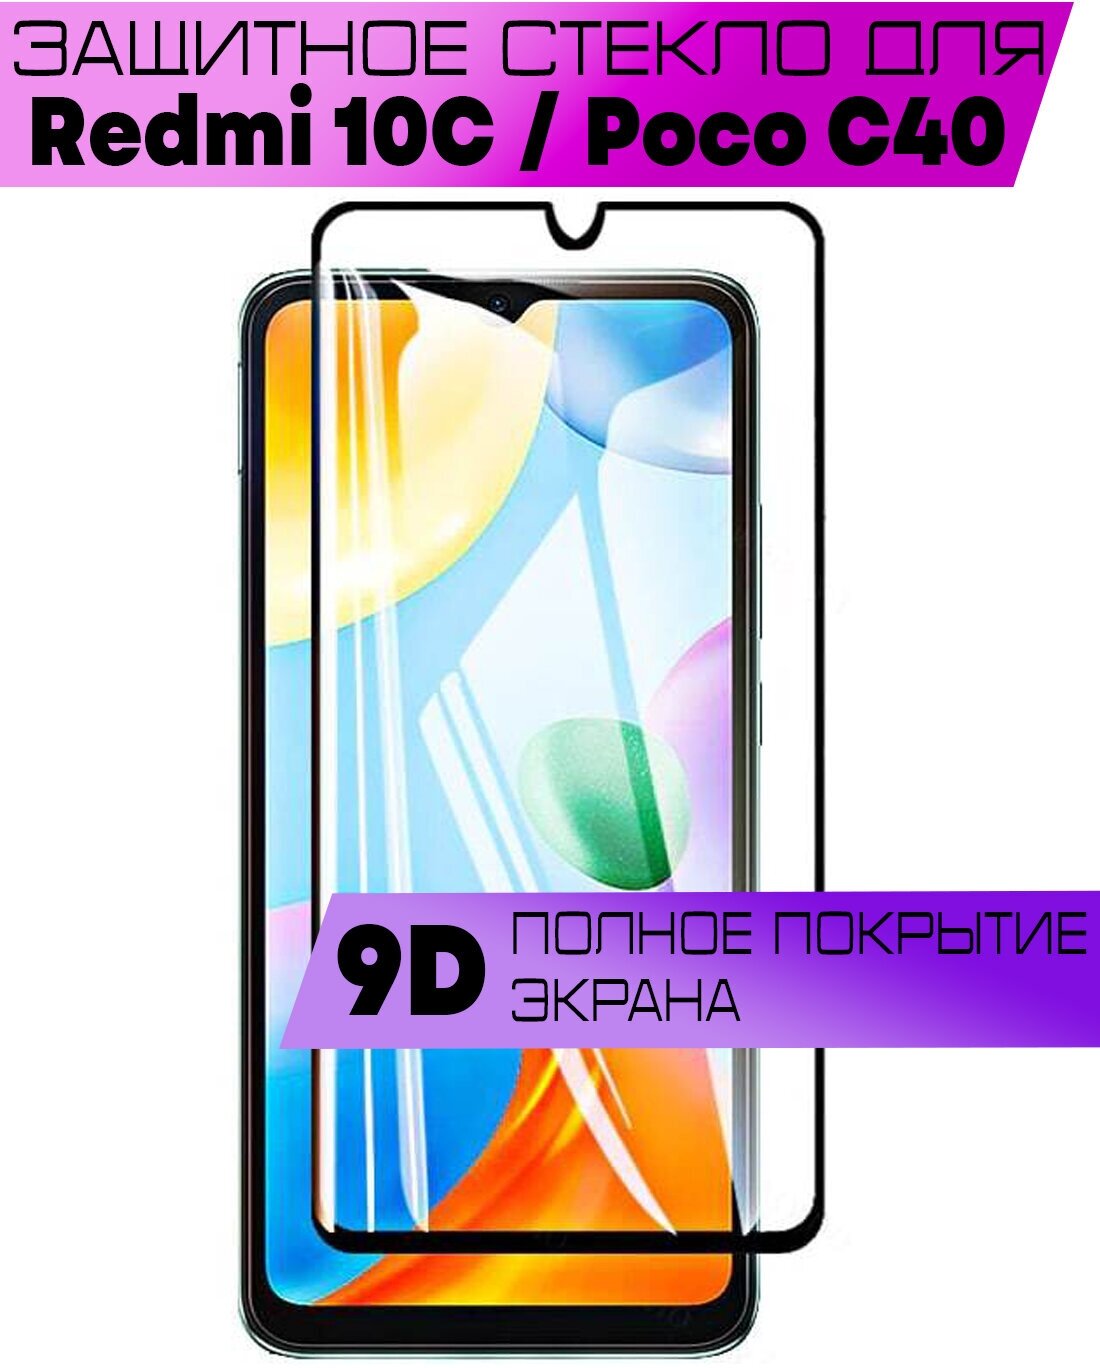 Защитное стекло BUYOO 9D для Xiaomi Redmi 10C, Poco C40, Сяоми Редми 10ц, Поко ц40 (на весь экран, черная рамка)